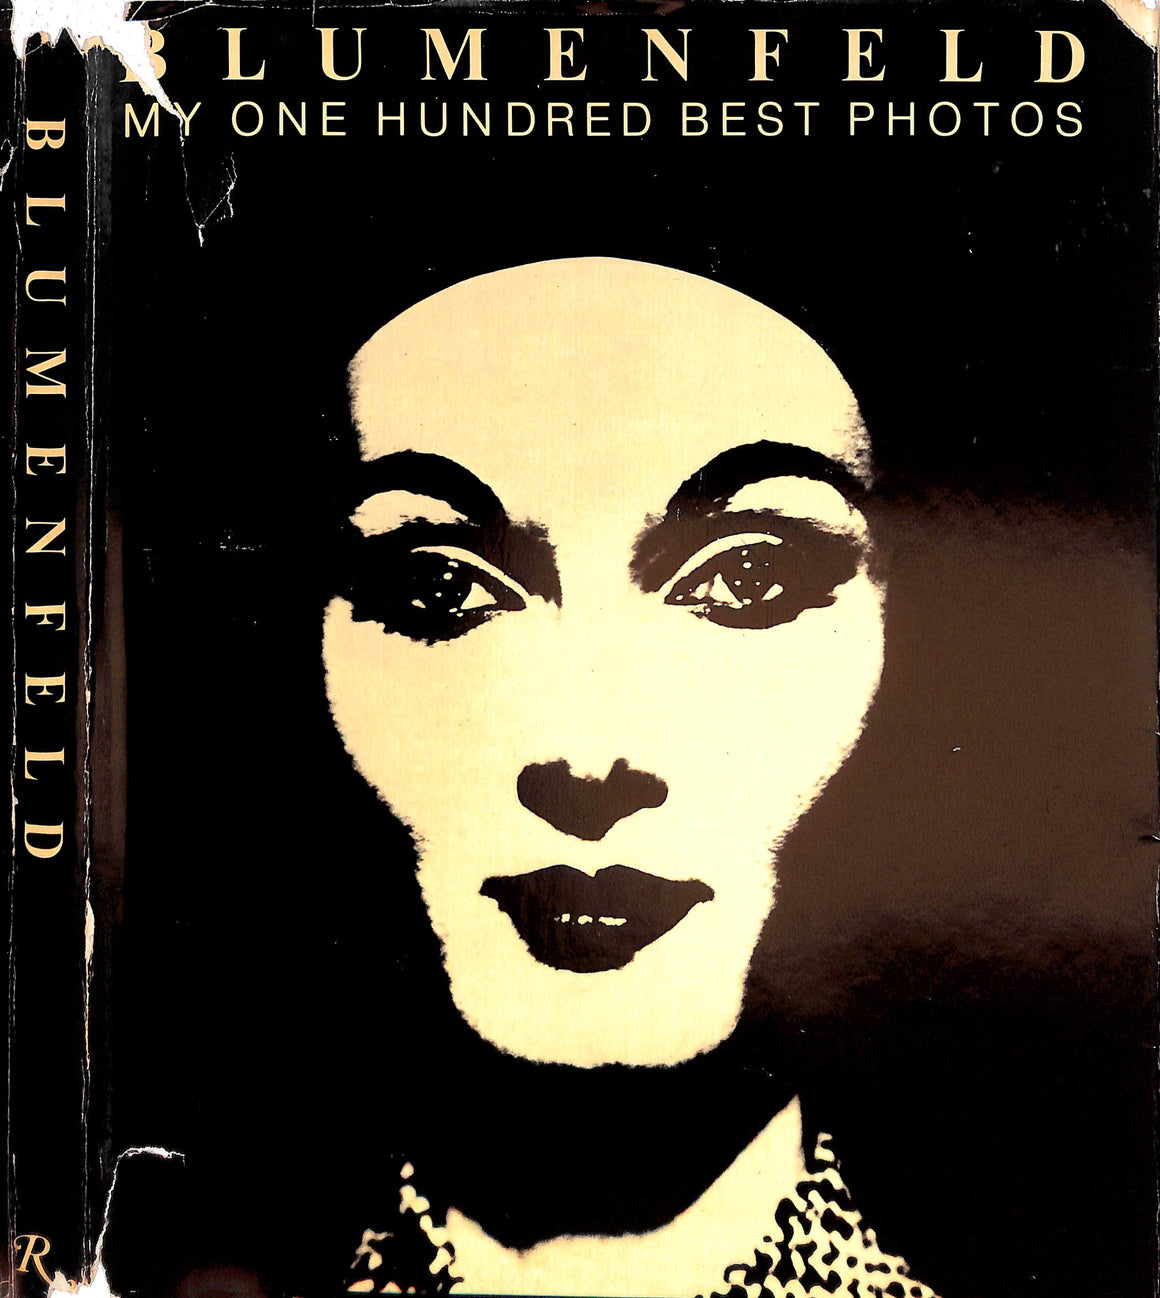 "Blumenfeld: My 100 Best Photos" 1981 TEICHER, Hendel [text by]